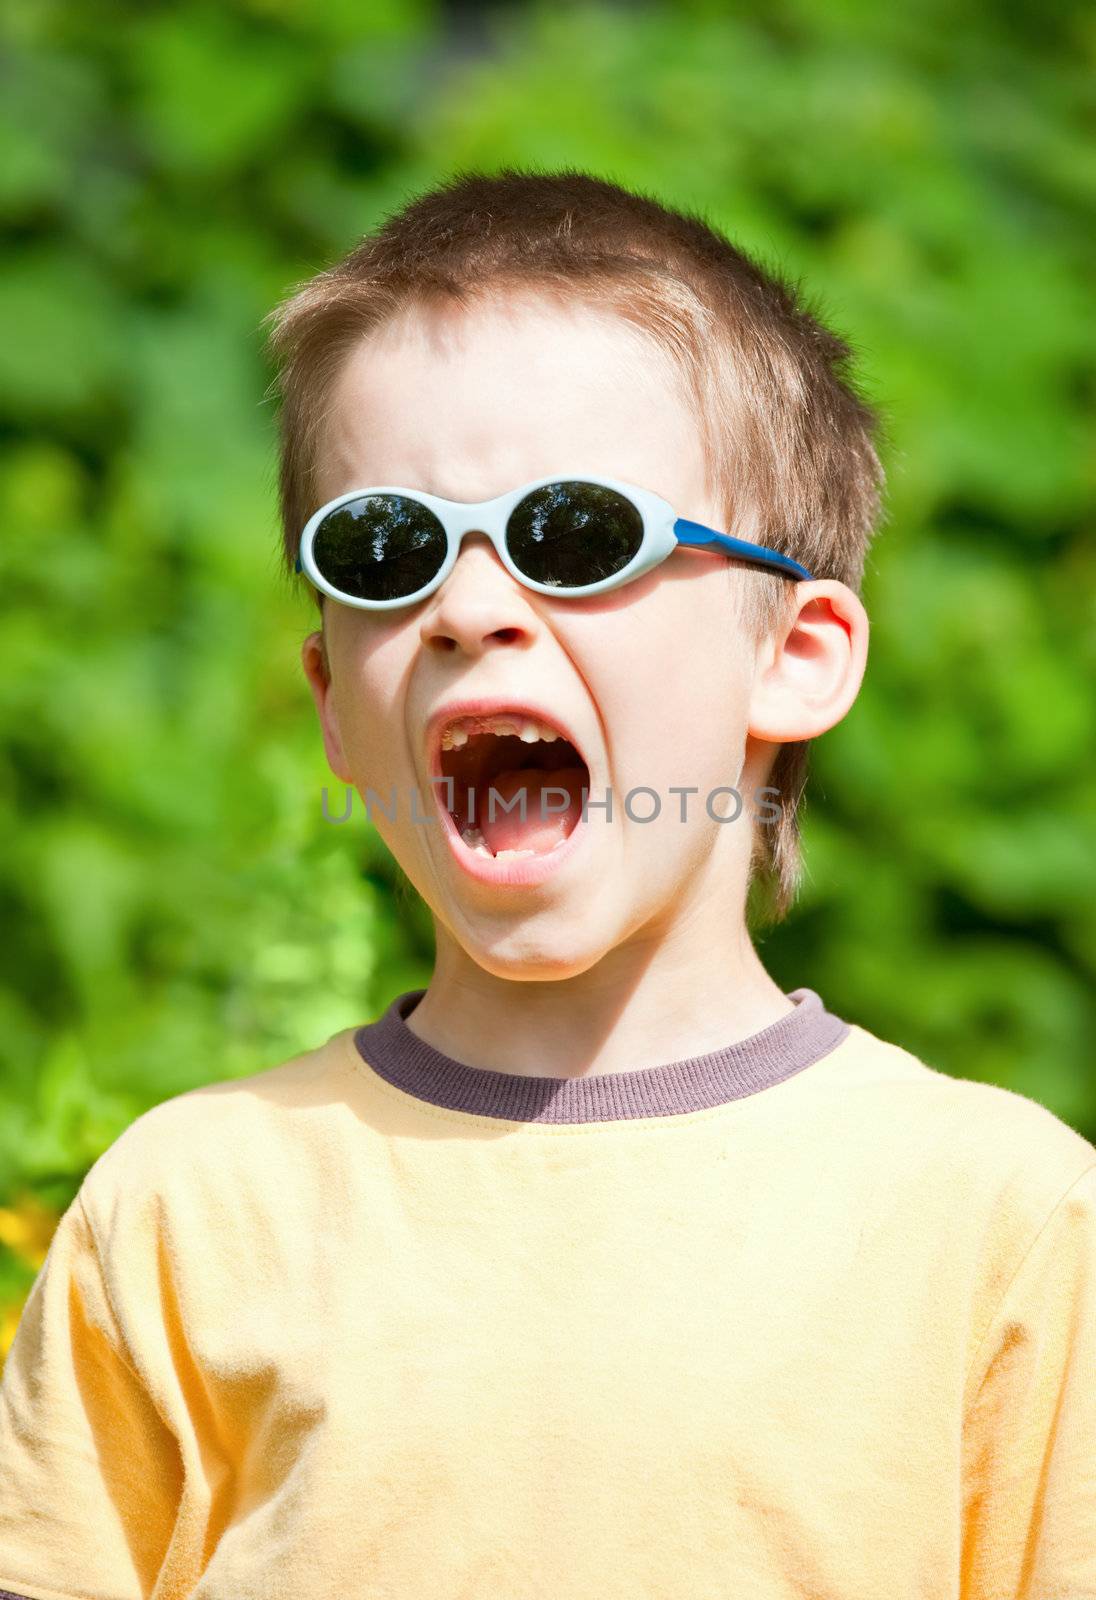 Shouting kid by naumoid